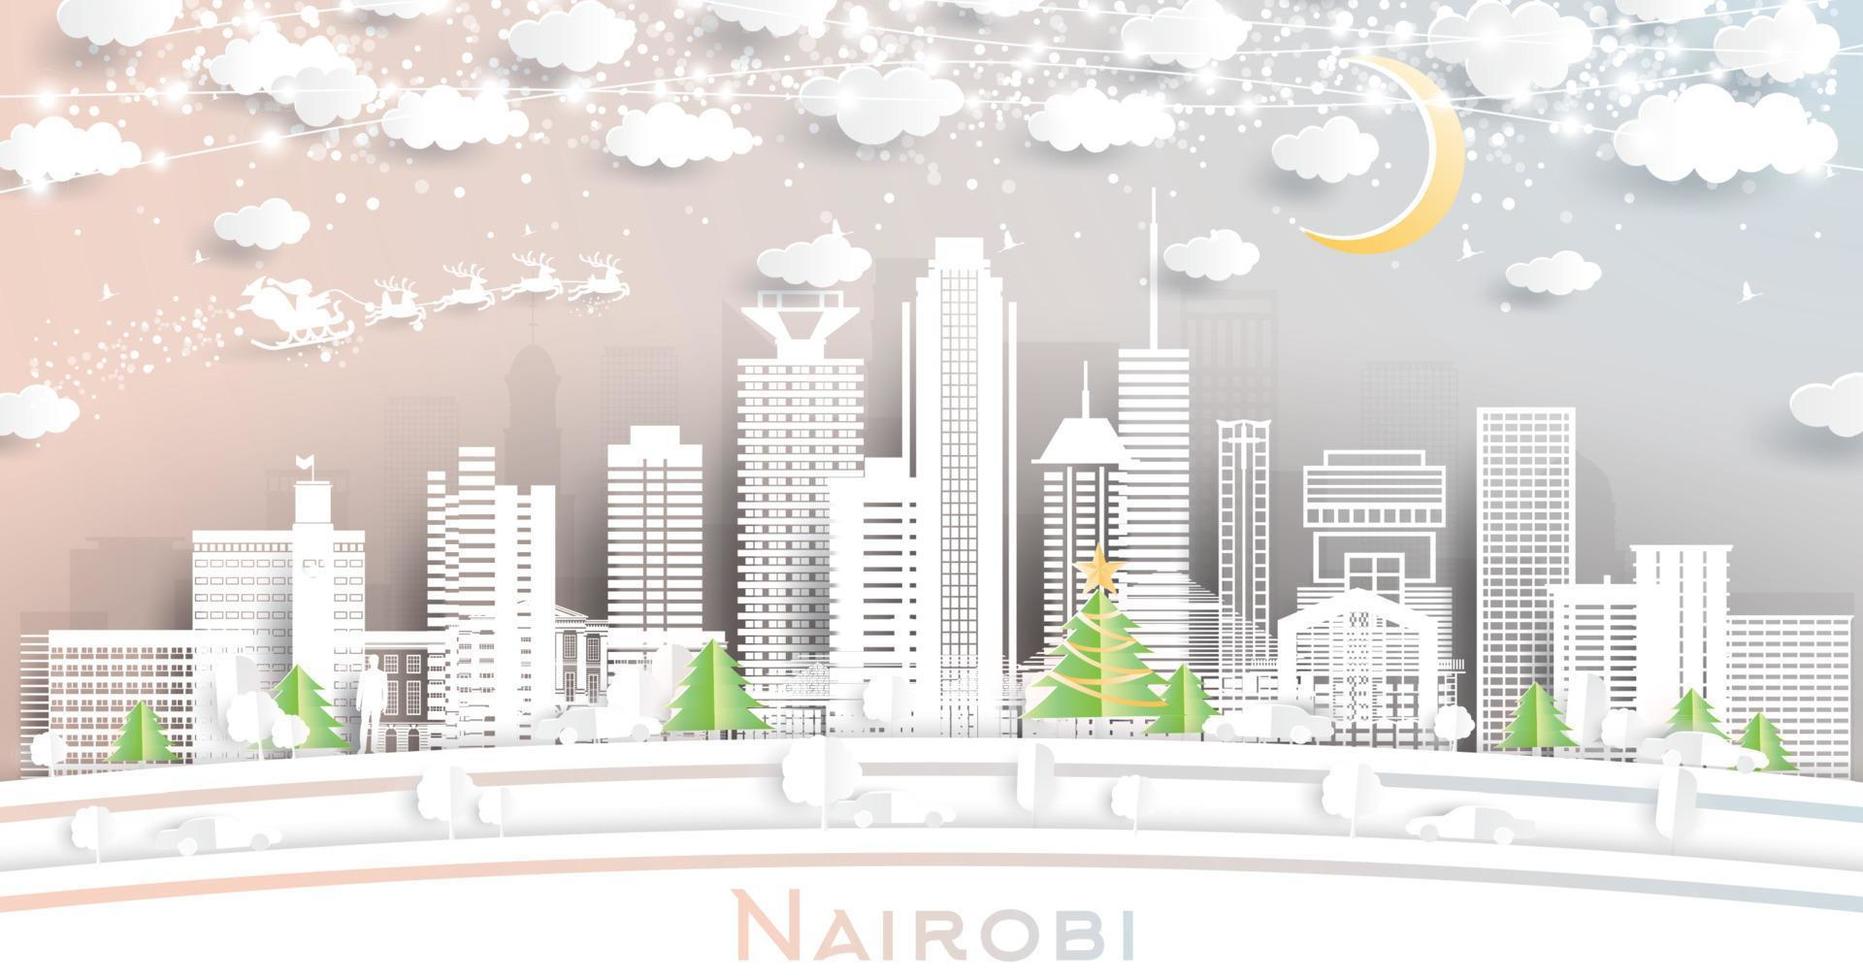 nairobi kenia stadtskyline im papierschnittstil mit schneeflocken, mond und neongirlande. vektor